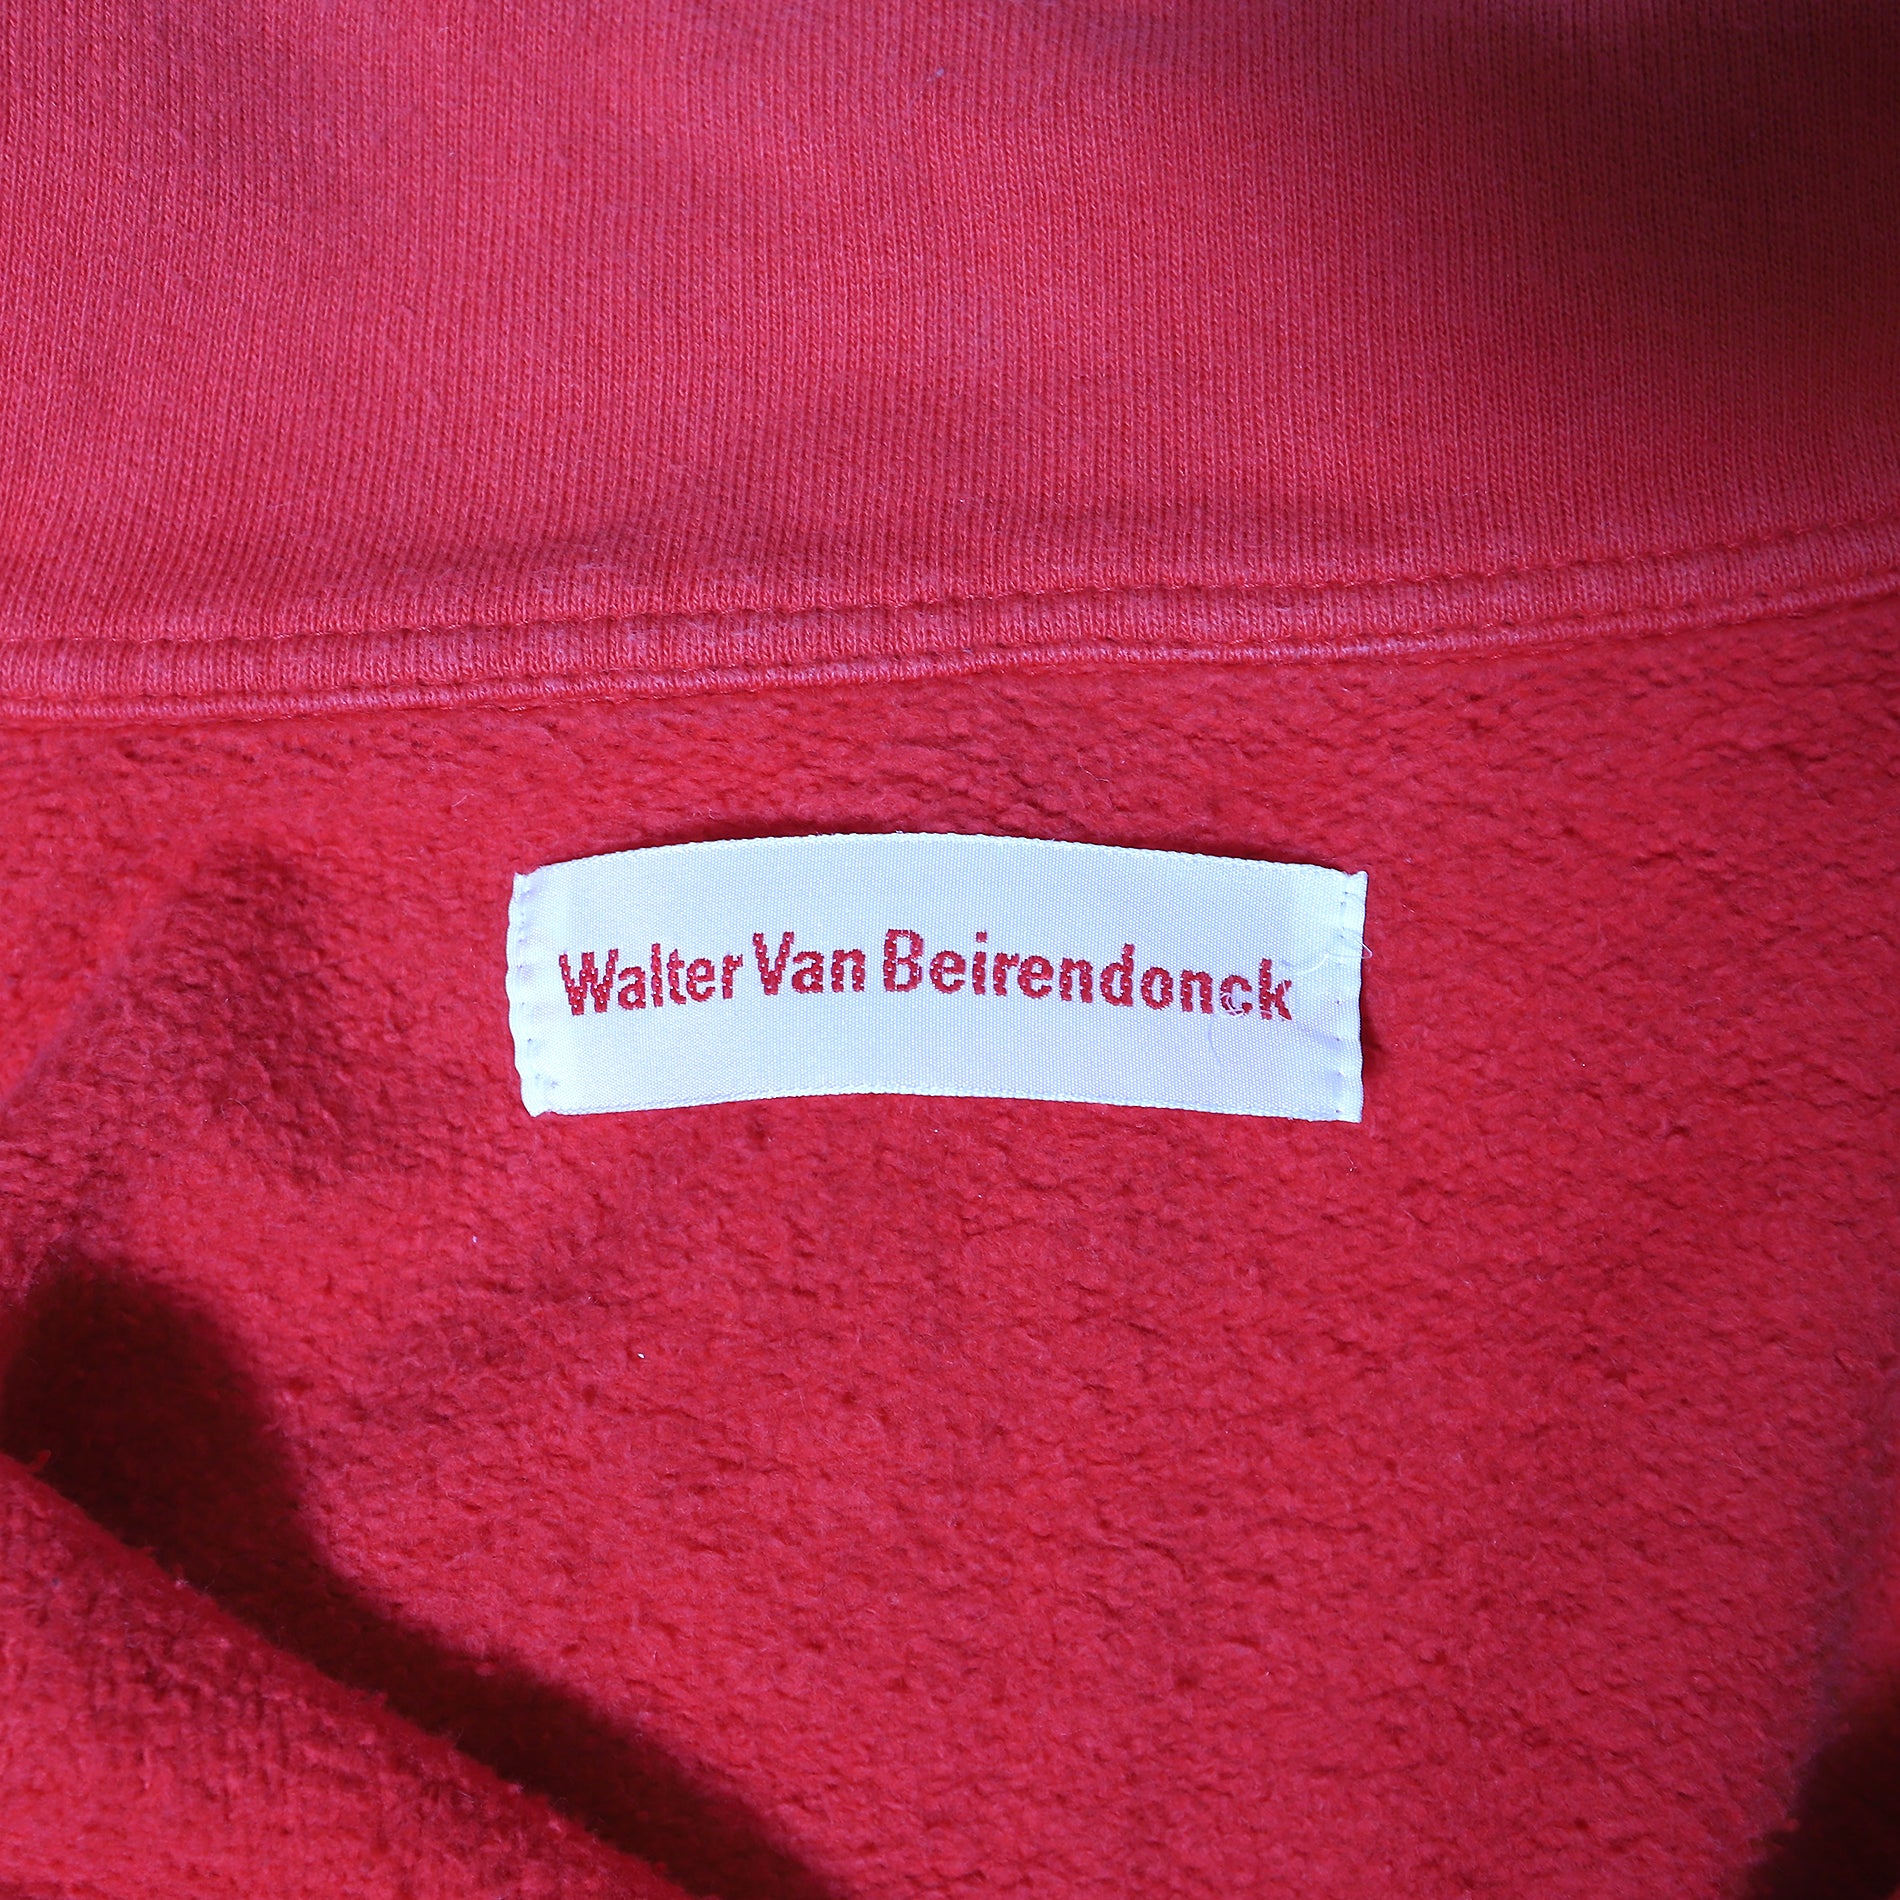 Walter Van Beirendonck, Brands